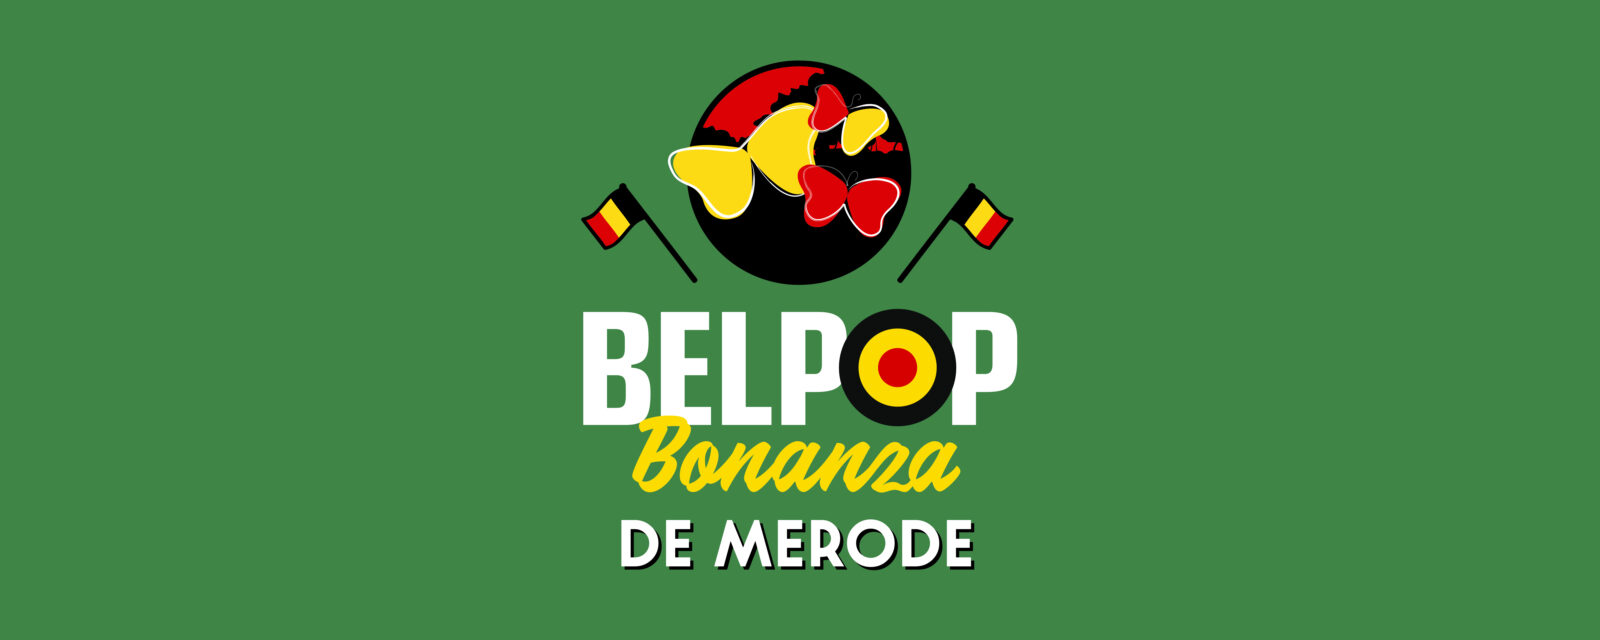 logo  belpop